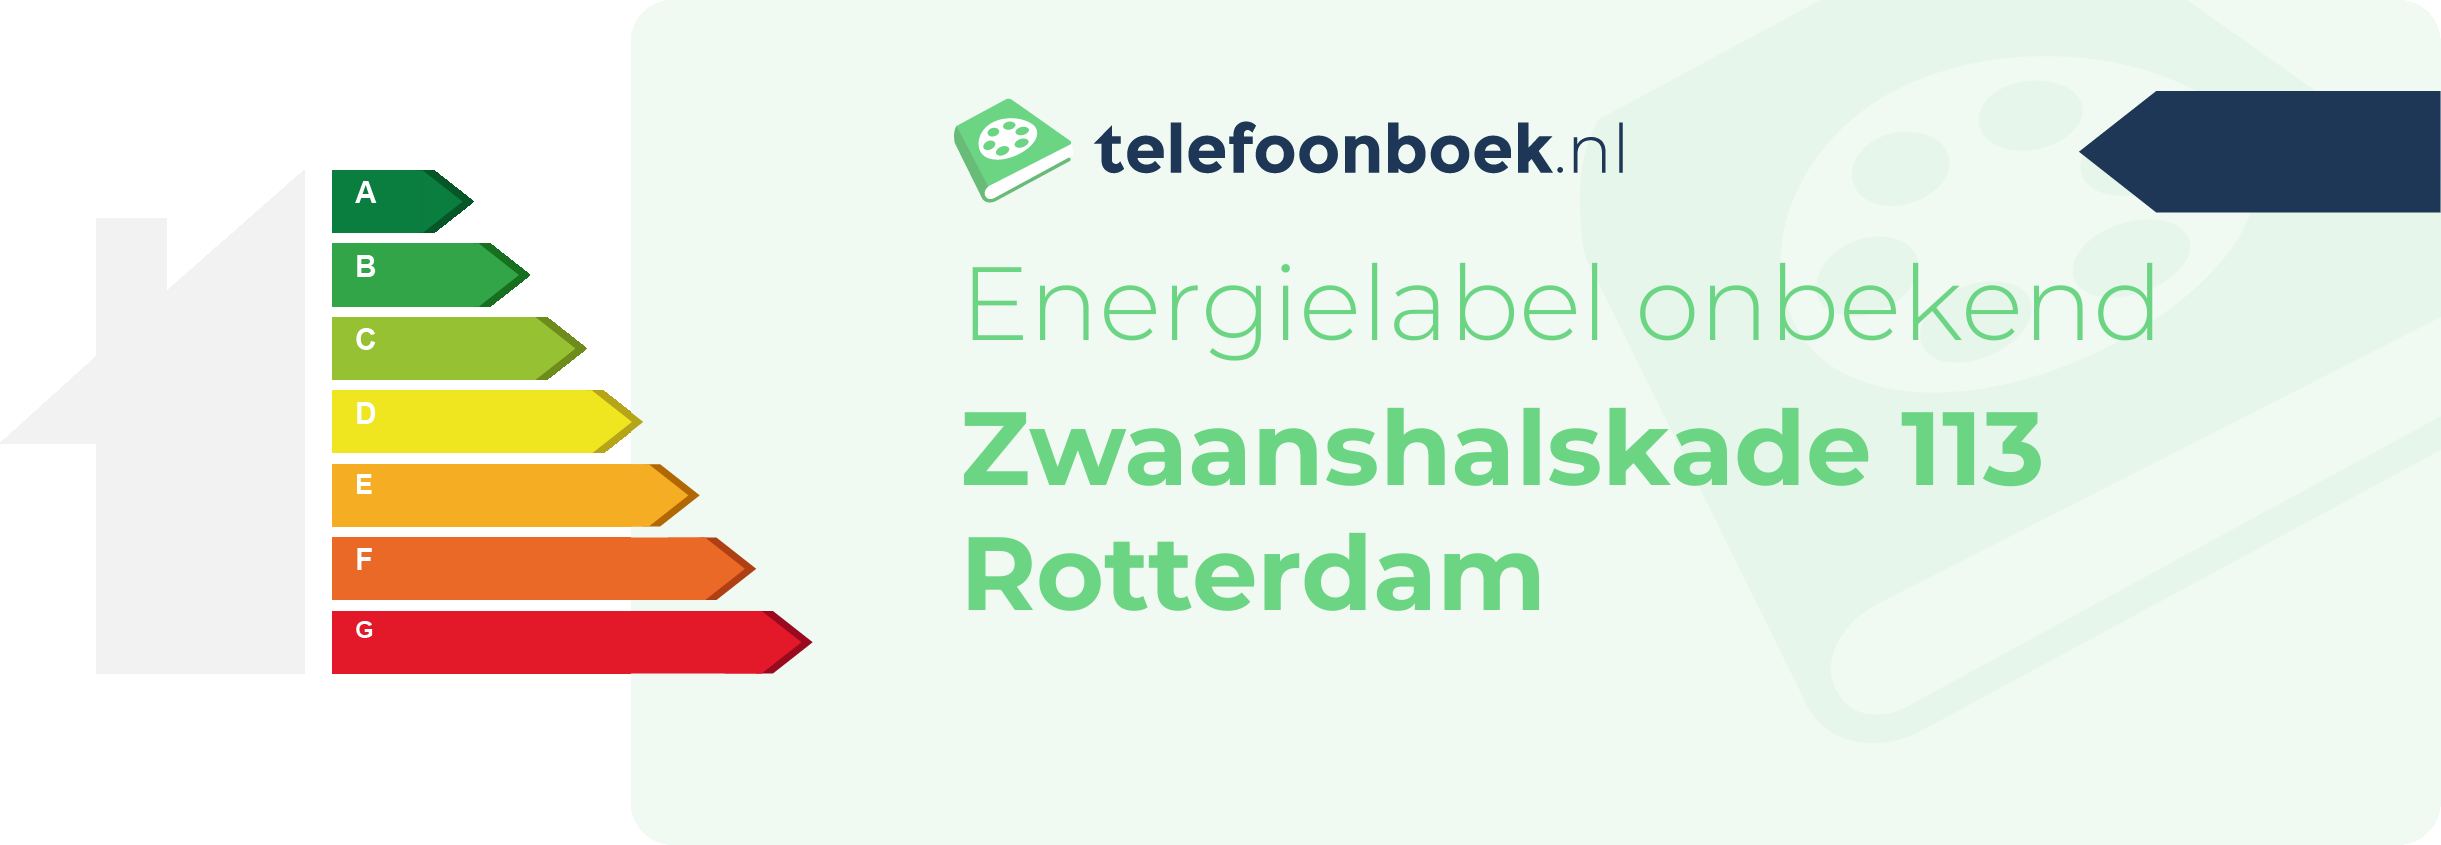 Energielabel Zwaanshalskade 113 Rotterdam